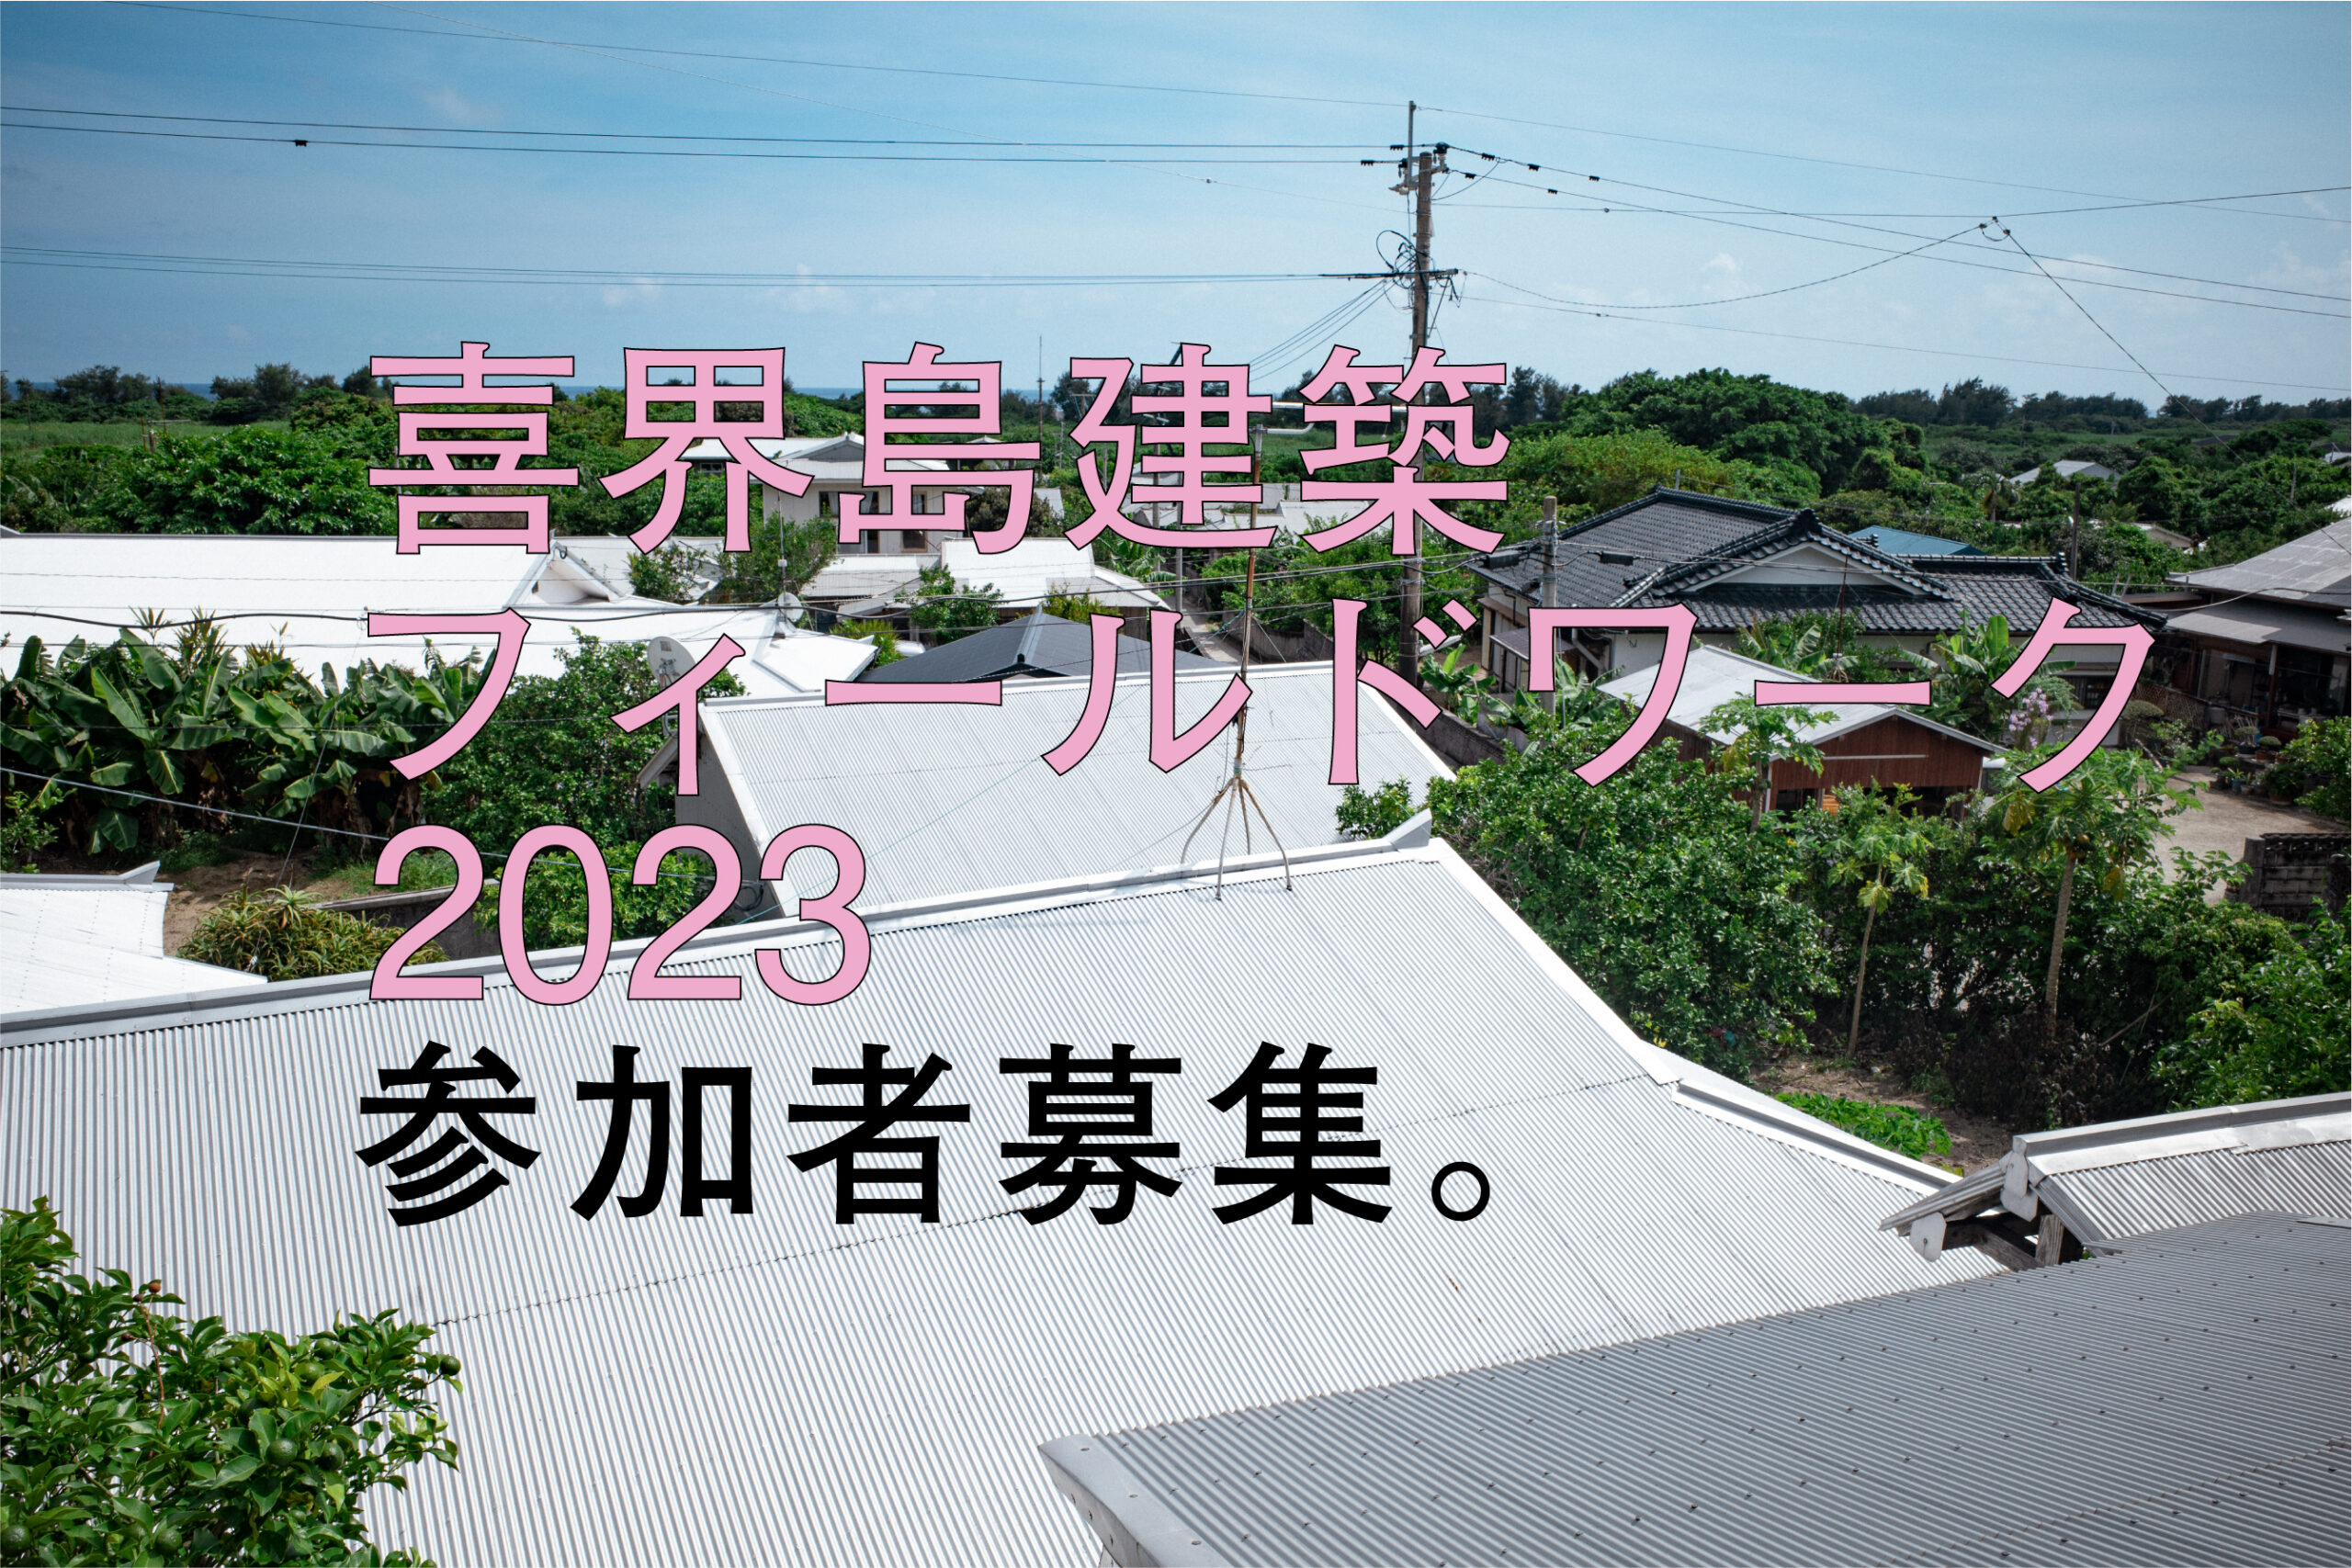 喜界島建築フィールドワーク2023 公募開始のお知らせ